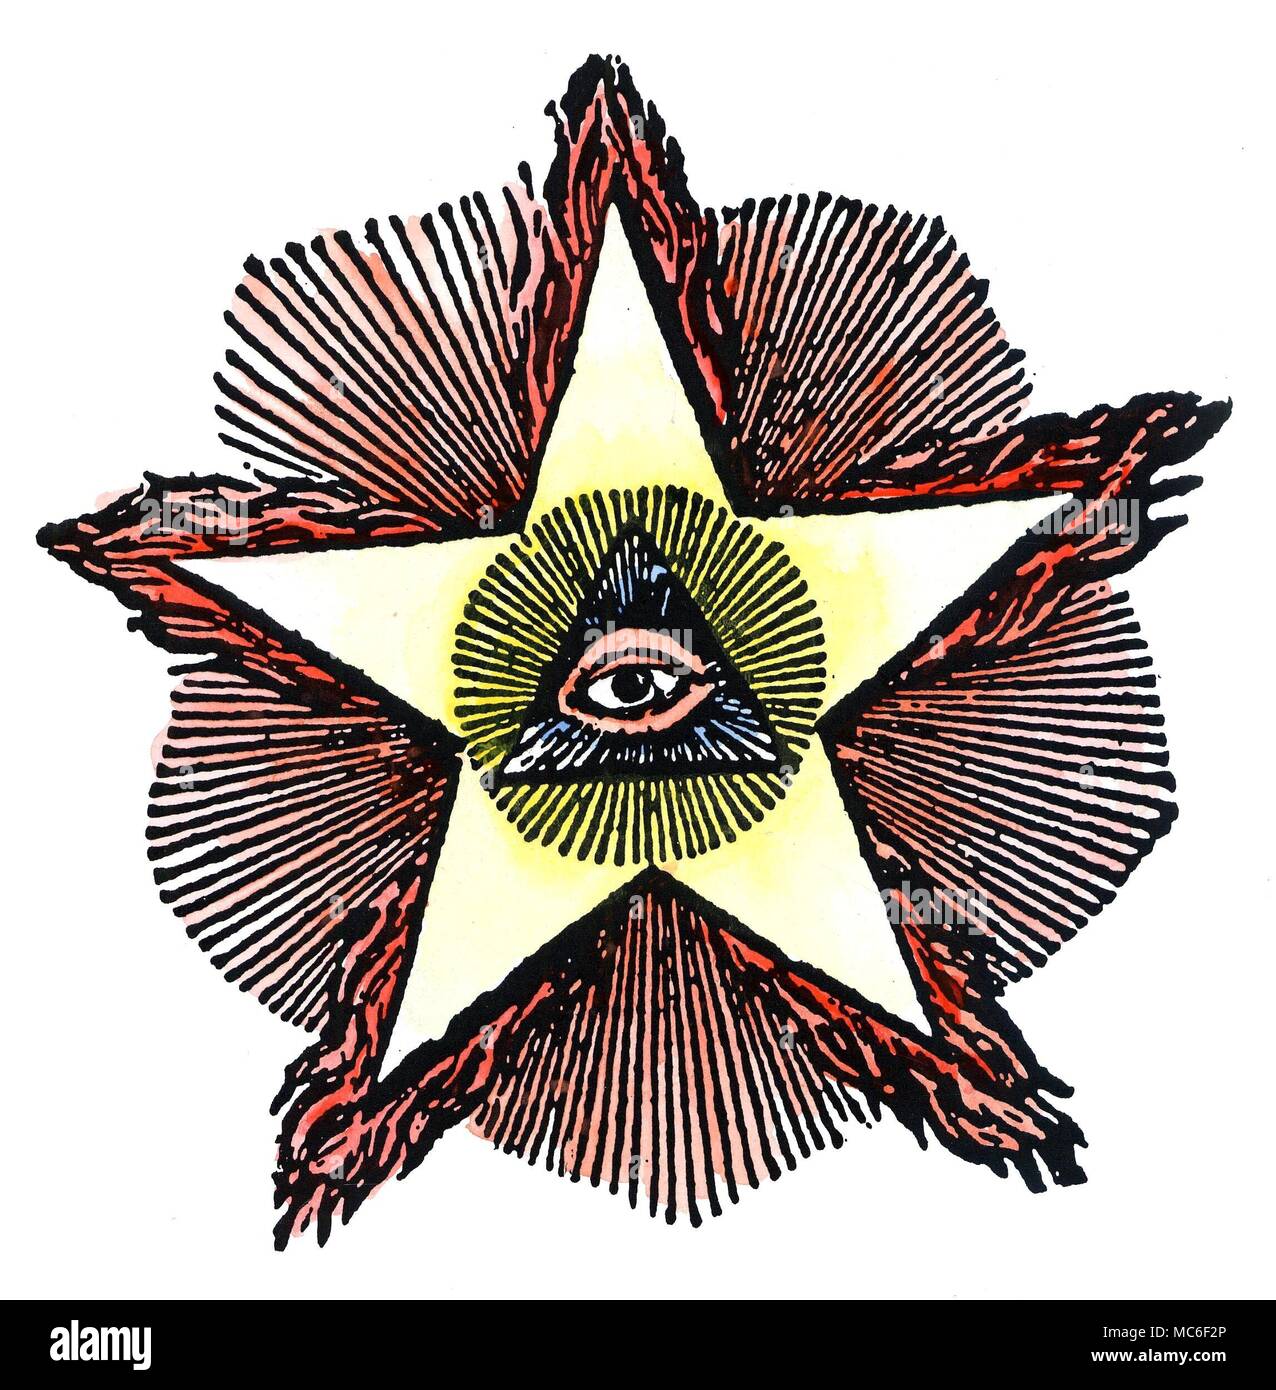 Symboles - Maçonnerie - Liatris LIATRIS Le de la maçonnerie. Cette gravure sur bois a été largement utilisé dans la maçonnerie du 19e siècle français pour représenter l'oeil qui voit de Dieu (ce qu'on appelle l'Œil de la Providence), le triangle radiant et l'étoile flamboyante, ou pentagramme. La recherche a montré que l'étoile à cinq branches a été dérivé de l'hiéroglyphe égyptien pour Dieu et de l'heure, qui était la star de la sba - une étoile à cinq branches Banque D'Images